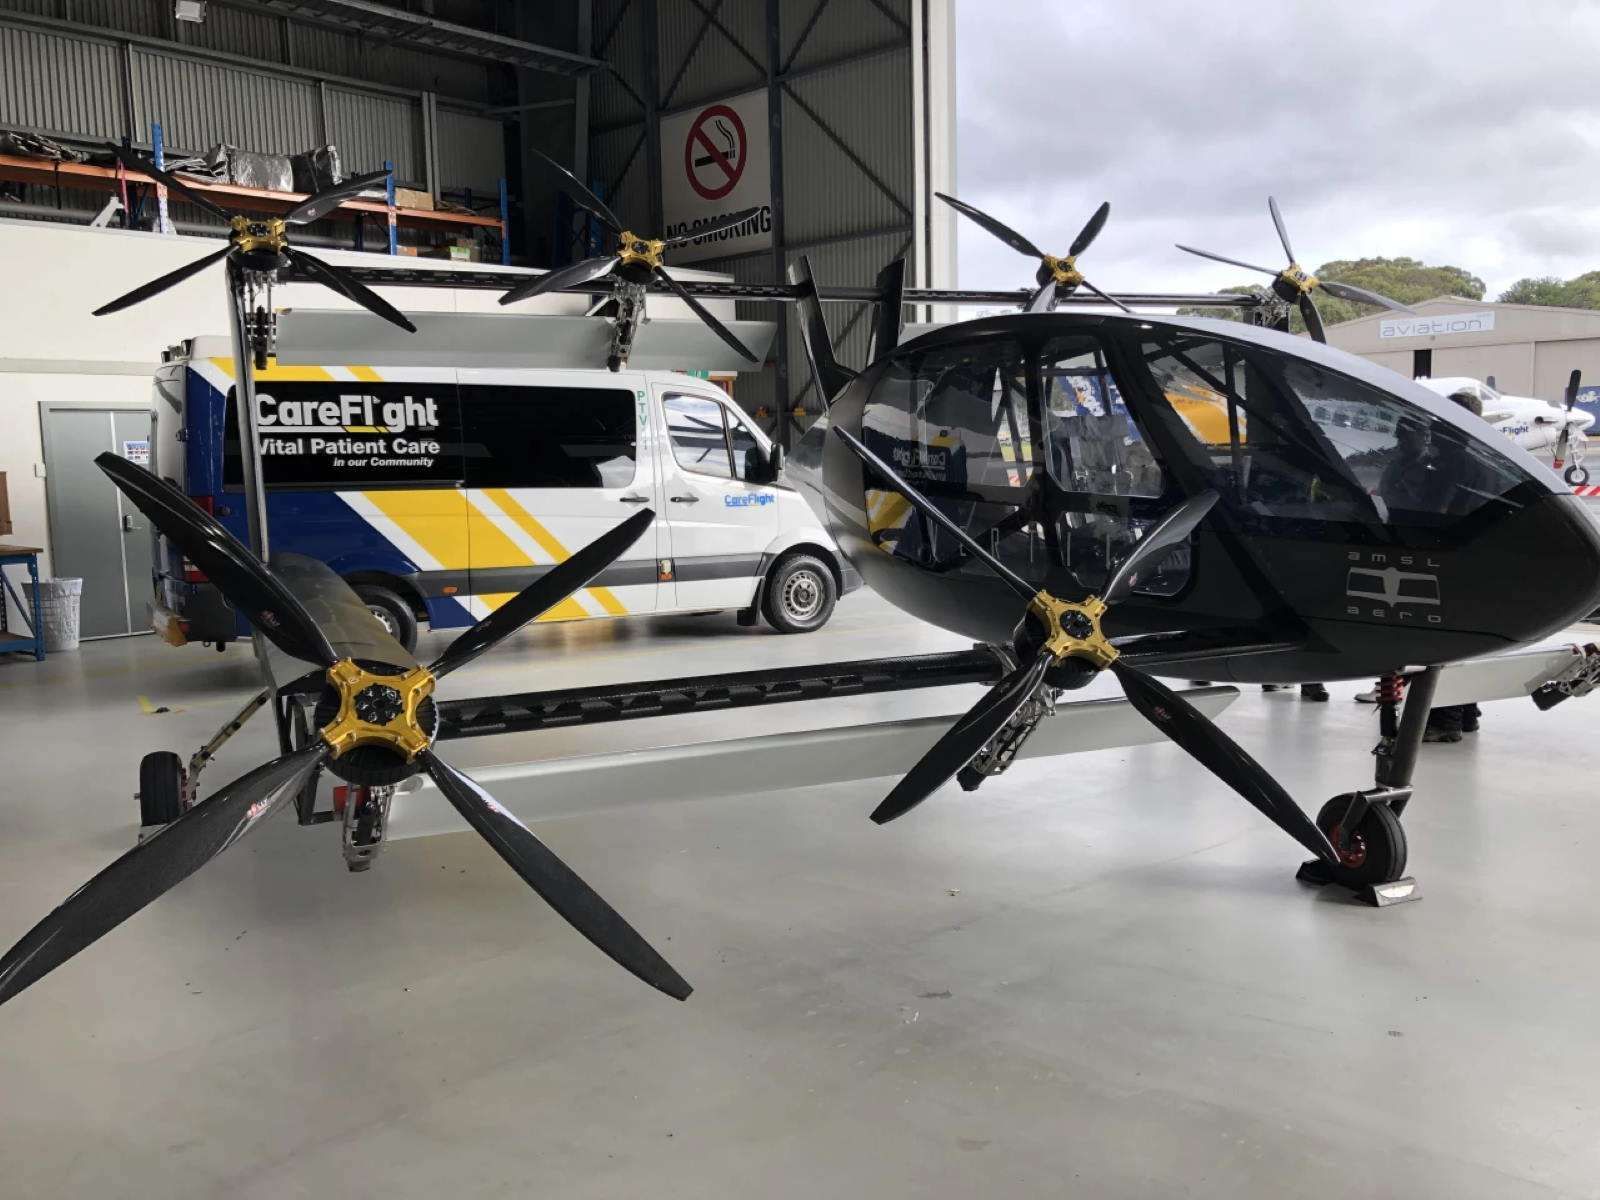 Літаючу карету швидкої допомоги представили в Австралії: фото, відео